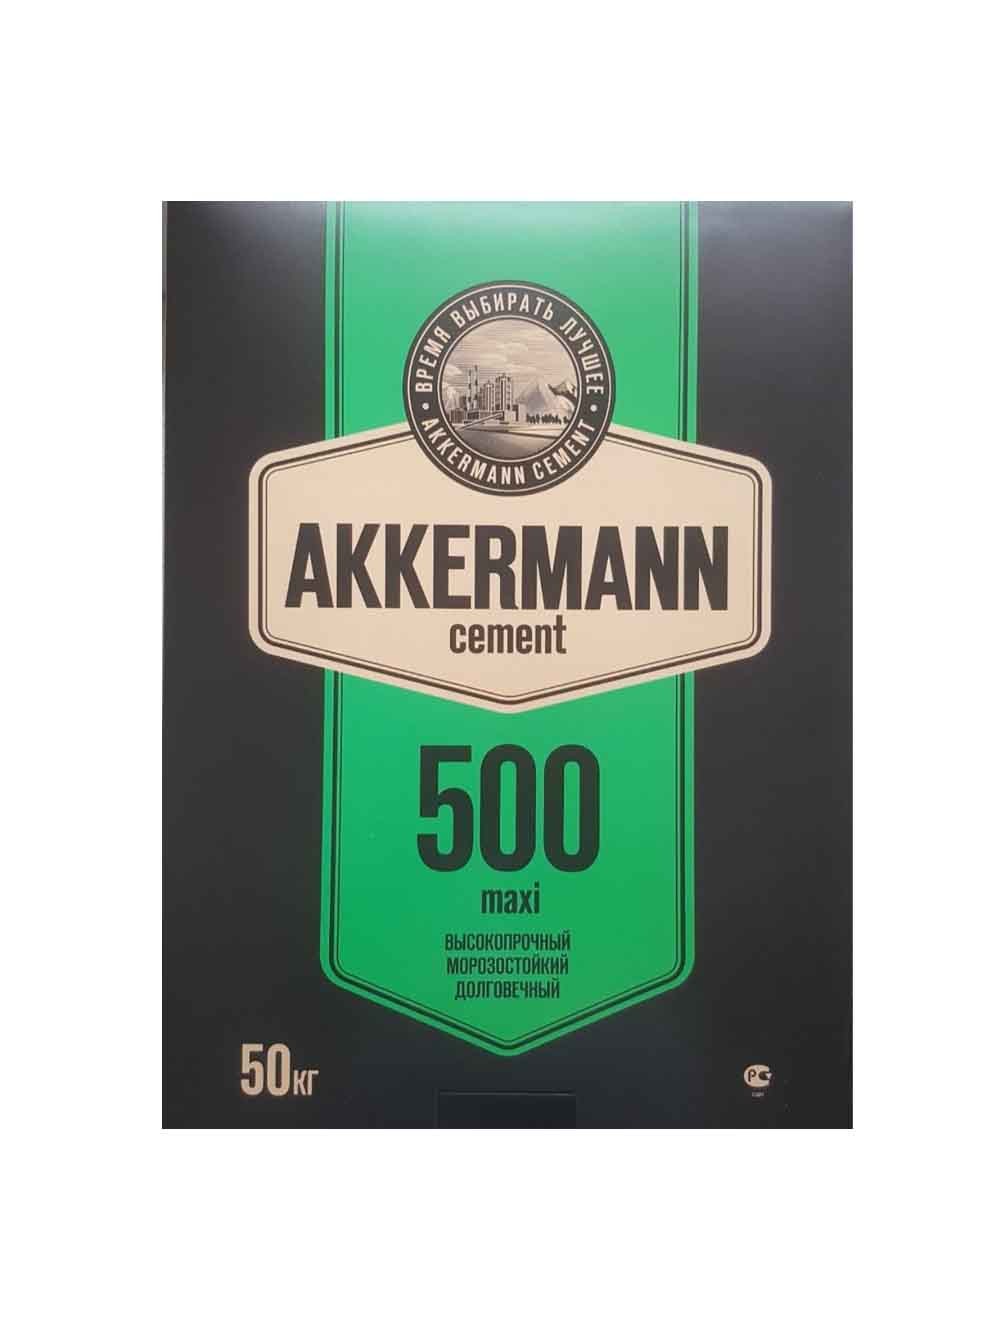 akkerman50050